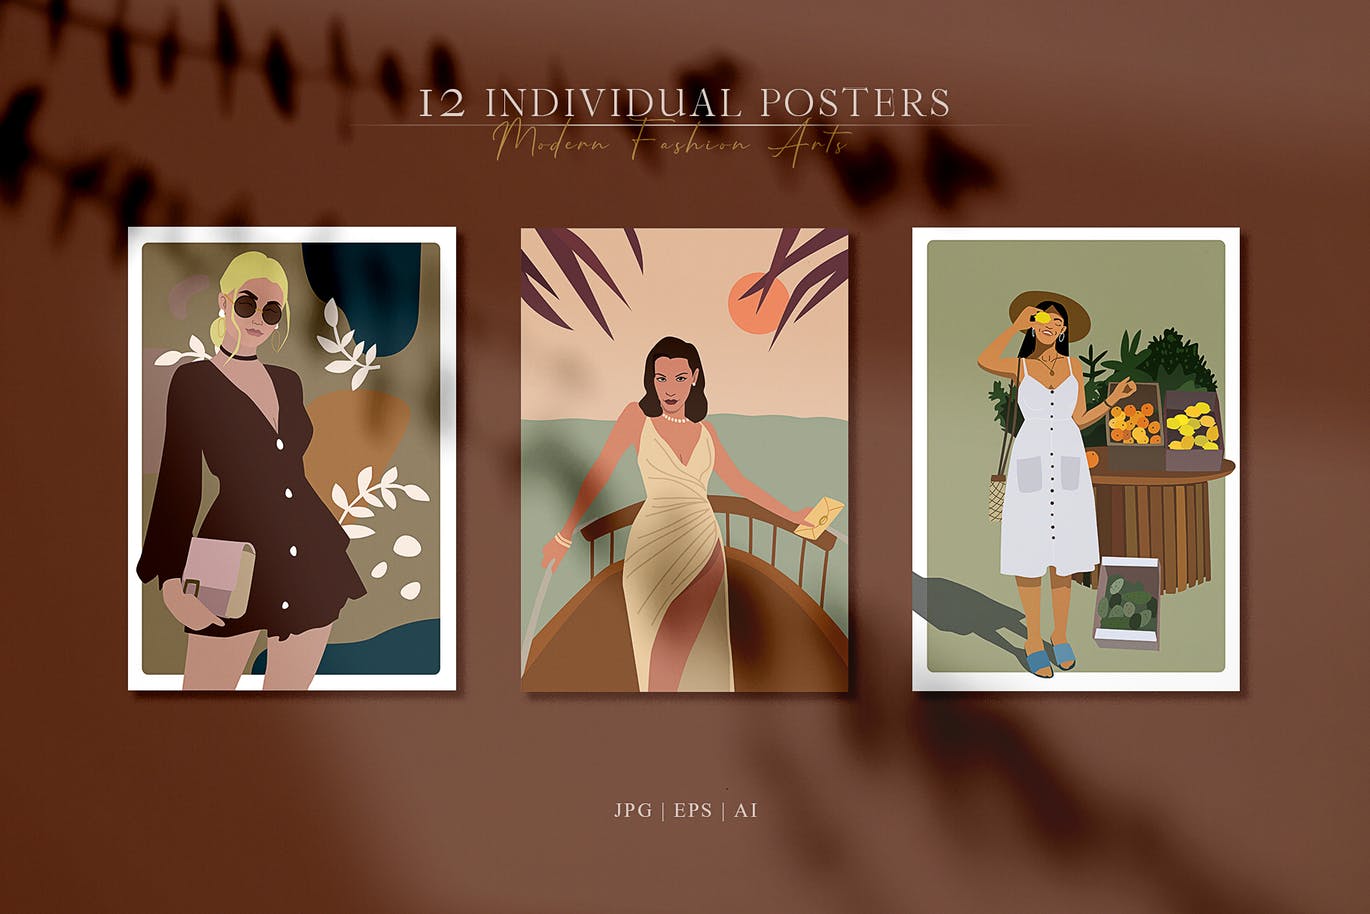 精品时尚高端简约优雅抽象女人肖像海报设计矢量插画集合-AI，JPG，PNG，EPS源文件,编号:82628942